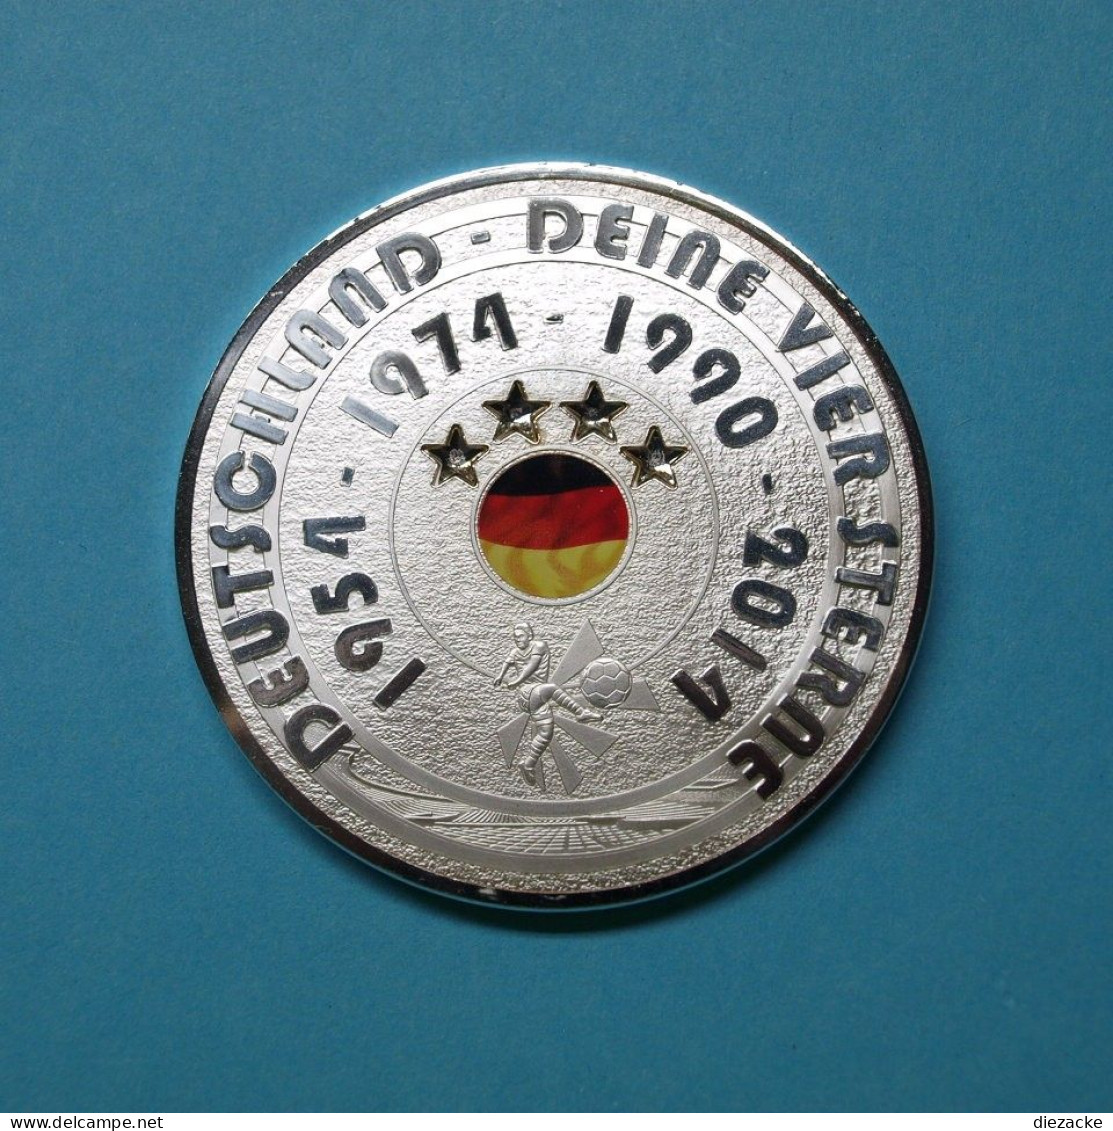 Gigant Prägung Deutschland - Deine Vier Sterne PP (M4974 - Non Classés